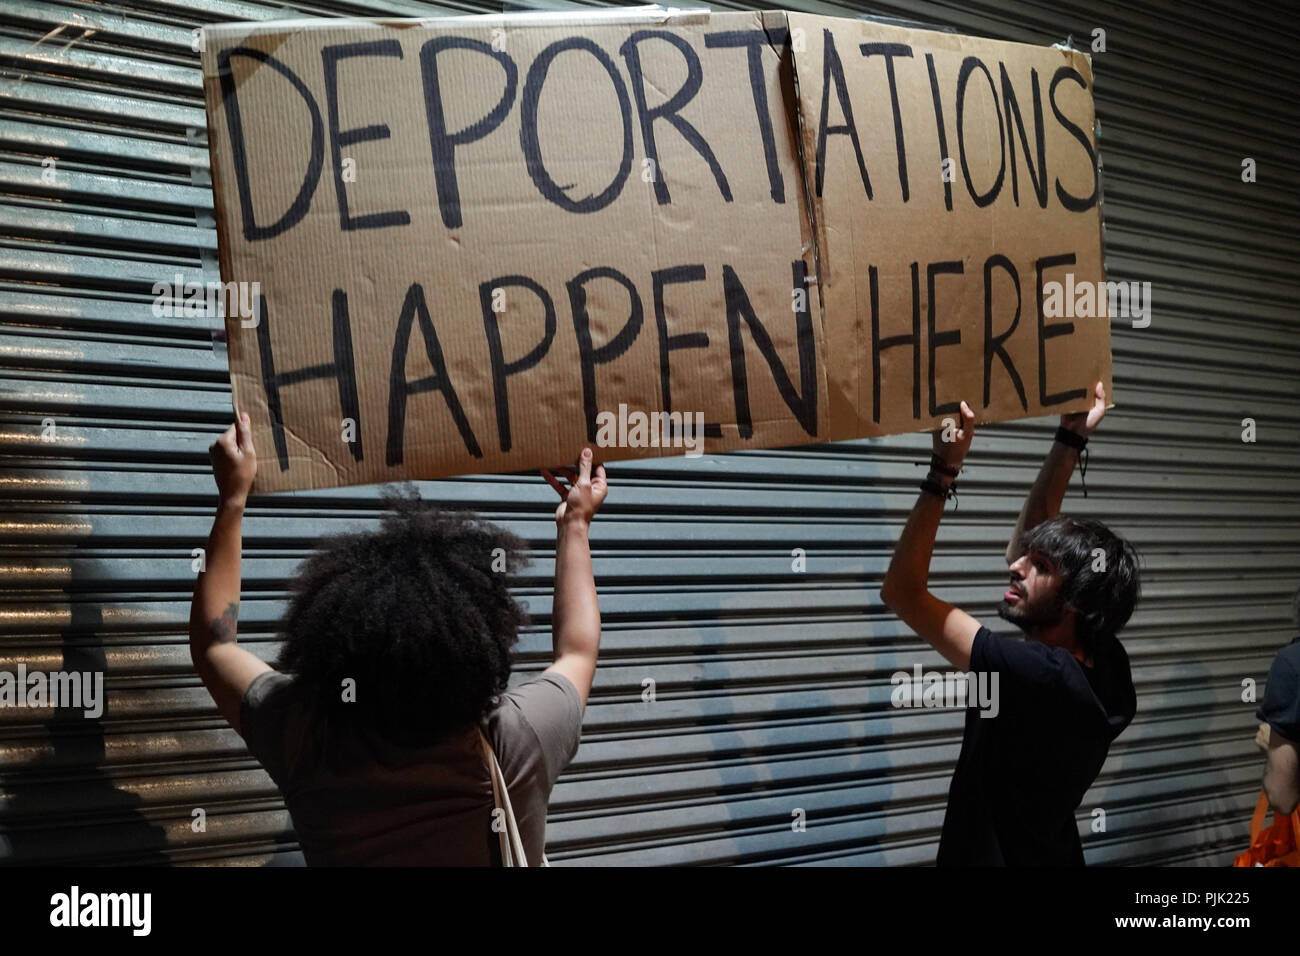 NEW YORK - Demonstranten Bühne außerhalb der Bundesrepublik Gebäude auf 201 Varick Street eine Trennung der Familie Programm Präsident Donald Trump und Aktionen von Einwanderungs- und Zollbehörden als Teil der "Demonstrationen besetzen ICE', um das Land zu protestieren. Stockfoto